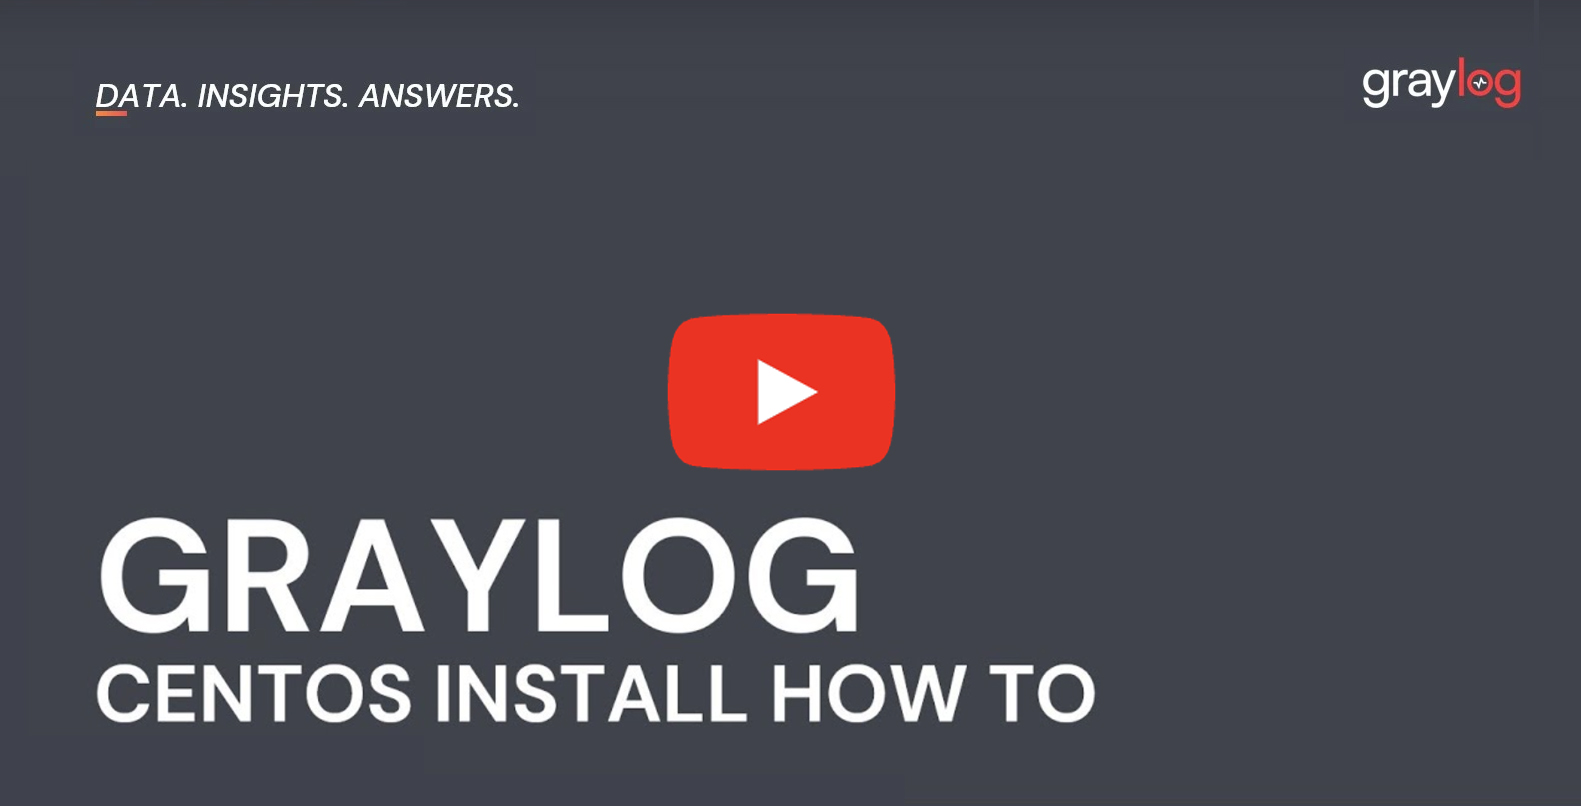 Graylog Centos Install How To